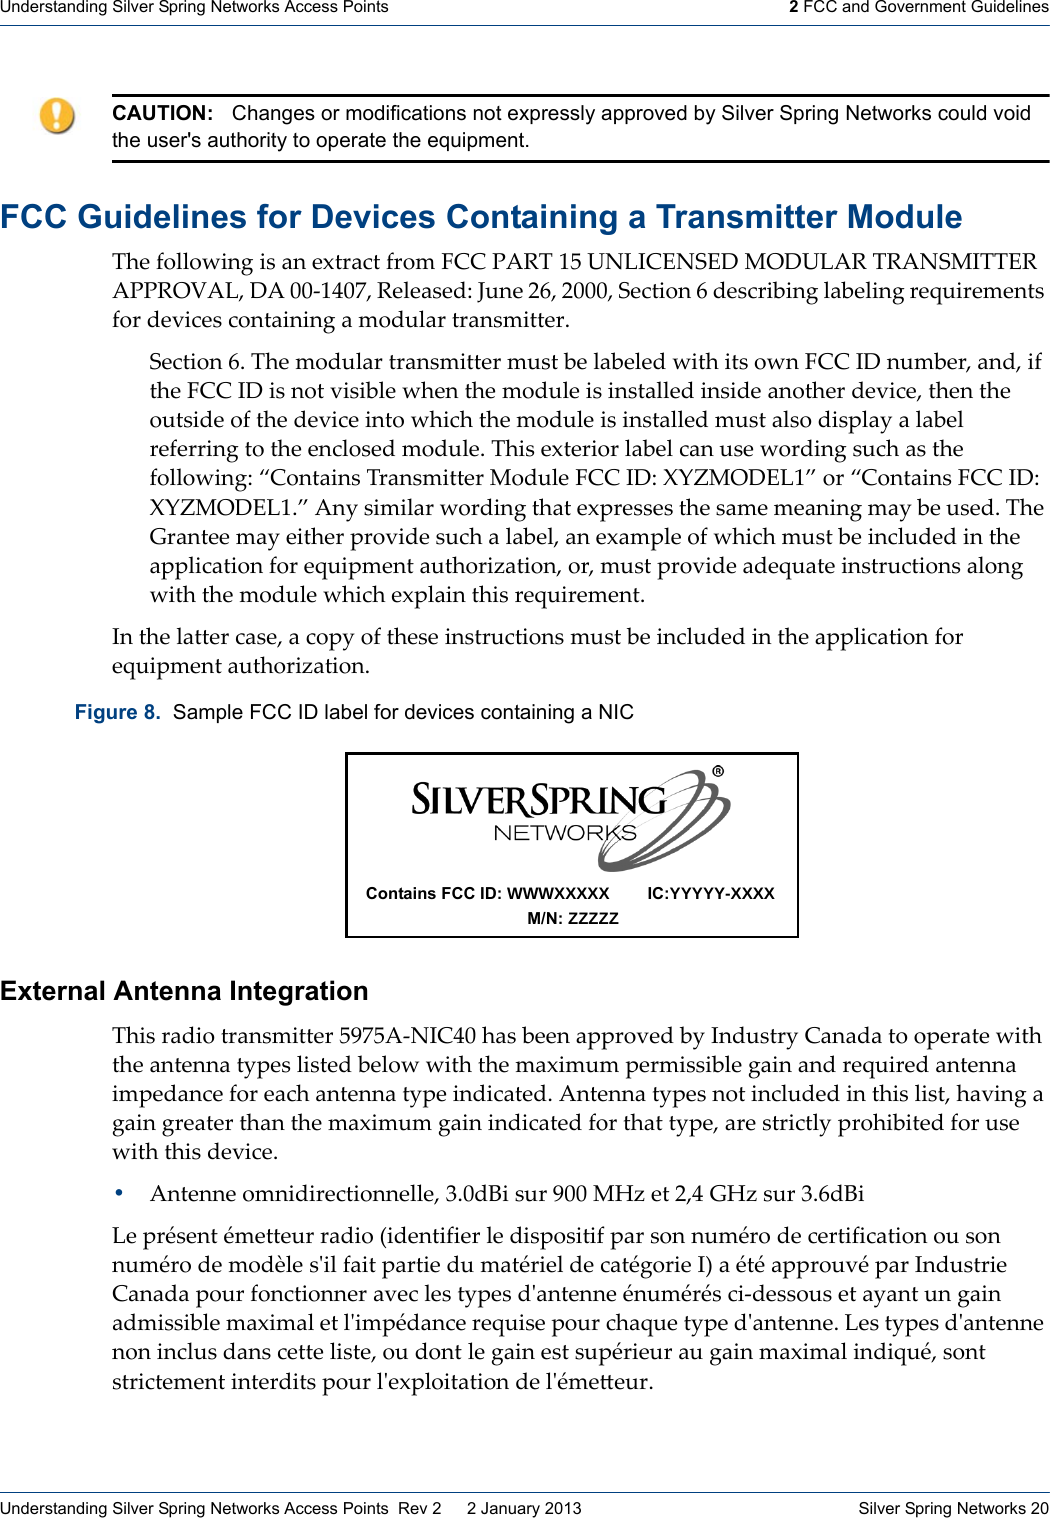 Understanding Silver Spring Networks Access Points 2 FCC and Government GuidelinesUnderstanding Silver Spring Networks Access Points  Rev 2    2 January 2013  Silver Spring Networks 20FCC Guidelines for Devices Containing a Transmitter Module !&quot;#ȱ?0&amp;&amp;08%*+ȱ%.ȱ5*ȱ#@1(5-1ȱ?(09ȱBVVȱ/,J!ȱCaȱDUW;VXU$XIȱG]IDW,Jȱ!J,U$G;!!XJȱ,//J]e,WAȱI,ȱPPȬC_P[AȱJ#&amp;#5.#4Zȱm=*#ȱQ\AȱQPPPAȱ$#-1%0*ȱ\ȱ4#.-(%7%*+ȱ&amp;57#&amp;%*+ȱ(#F=%(#9#*1.ȱ?0(ȱ4#&apos;%-#.ȱ-0*15%*%*+ȱ5ȱ904=&amp;5(ȱ1(5*.9%11#(:ȱ$#-1%0*ȱ\:ȱ!&quot;#ȱ904=&amp;5(ȱ1(5*.9%11#(ȱ9=.1ȱ7#ȱ&amp;57#&amp;#4ȱ8%1&quot;ȱ%1.ȱ08*ȱBVVȱ;Iȱ*=97#(Aȱ5*4Aȱ%?ȱ1&quot;#ȱBVVȱ;Iȱ%.ȱ*01ȱ&apos;%.%7&amp;#ȱ8&quot;#*ȱ1&quot;#ȱ904=&amp;#ȱ%.ȱ%*.15&amp;&amp;#4ȱ%*.%4#ȱ5*01&quot;#(ȱ4#&apos;%-#Aȱ1&quot;#*ȱ1&quot;#ȱ0=1.%4#ȱ0?ȱ1&quot;#ȱ4#&apos;%-#ȱ%*10ȱ8&quot;%-&quot;ȱ1&quot;#ȱ904=&amp;#ȱ%.ȱ%*.15&amp;&amp;#4ȱ9=.1ȱ5&amp;.0ȱ4%.)&amp;5&lt;ȱ5ȱ&amp;57#&amp;ȱ(#?#((%*+ȱ10ȱ1&quot;#ȱ#*-&amp;0.#4ȱ904=&amp;#:ȱ!&quot;%.ȱ#@1#(%0(ȱ&amp;57#&amp;ȱ-5*ȱ=.#ȱ80(4%*+ȱ.=-&quot;ȱ5.ȱ1&quot;#ȱ?0&amp;&amp;08%*+ZȱMV0*15%*.ȱ!(5*.9%11#(ȱG04=&amp;#ȱBVVȱ;IZȱinoG]IXWCNȱ0(ȱMV0*15%*.ȱBVVȱ;IZȱinoG]IXWC:Nȱ,*&lt;ȱ.%9%&amp;5(ȱ80(4%*+ȱ1&quot;51ȱ#@)(#..#.ȱ1&quot;#ȱ.59#ȱ9#5*%*+ȱ95&lt;ȱ7#ȱ=.#4:ȱ!&quot;#ȱc(5*1##ȱ95&lt;ȱ#%1&quot;#(ȱ)(0&apos;%4#ȱ.=-&quot;ȱ5ȱ&amp;57#&amp;Aȱ5*ȱ#@59)&amp;#ȱ0?ȱ8&quot;%-&quot;ȱ9=.1ȱ7#ȱ%*-&amp;=4#4ȱ%*ȱ1&quot;#ȱ5))&amp;%-51%0*ȱ?0(ȱ#F=%)9#*1ȱ5=1&quot;0(%T51%0*Aȱ0(Aȱ9=.1ȱ)(0&apos;%4#ȱ54#F=51#ȱ%*.1(=-1%0*.ȱ5&amp;0*+ȱ8%1&quot;ȱ1&quot;#ȱ904=&amp;#ȱ8&quot;%-&quot;ȱ#@)&amp;5%*ȱ1&quot;%.ȱ(#F=%(#9#*1:ȱ;*ȱ1&quot;#ȱ&amp;511#(ȱ-5.#Aȱ5ȱ-0)&lt;ȱ0?ȱ1&quot;#.#ȱ%*.1(=-1%0*.ȱ9=.1ȱ7#ȱ%*-&amp;=4#4ȱ%*ȱ1&quot;#ȱ5))&amp;%-51%0*ȱ?0(ȱ#F=%)9#*1ȱ5=1&quot;0(%T51%0*:ȱExternal Antenna Integration !&quot;%.ȱ(54%0ȱ1(5*.9%11#(ȱaO[a,ȬU;V_Pȱ&quot;5.ȱ7##*ȱ5))(0&apos;#4ȱ7&lt;ȱ;*4=.1(&lt;ȱV5*545ȱ10ȱ0)#(51#ȱ8%1&quot;ȱ1&quot;#ȱ5*1#**5ȱ1&lt;)#.ȱ&amp;%.1#4ȱ7#&amp;08ȱ8%1&quot;ȱ1&quot;#ȱ95@%9=9ȱ)#(9%..%7&amp;#ȱ+5%*ȱ5*4ȱ(#F=%(#4ȱ5*1#**5ȱ%9)#45*-#ȱ?0(ȱ#5-&quot;ȱ5*1#**5ȱ1&lt;)#ȱ%*4%-51#4:ȱ,*1#**5ȱ1&lt;)#.ȱ*01ȱ%*-&amp;=4#4ȱ%*ȱ1&quot;%.ȱ&amp;%.1Aȱ&quot;5&apos;%*+ȱ5ȱ+5%*ȱ+(#51#(ȱ1&quot;5*ȱ1&quot;#ȱ95@%9=9ȱ+5%*ȱ%*4%-51#4ȱ?0(ȱ1&quot;51ȱ1&lt;)#Aȱ5(#ȱ.1(%-1&amp;&lt;ȱ)(0&quot;%7%1#4ȱ?0(ȱ=.#ȱ8%1&quot;ȱ1&quot;%.ȱ4#&apos;%-#:ȱ!,*1#**#ȱ09*%4%(#-1%0**#&amp;&amp;#Aȱg:P4^%ȱ.=(ȱOPPȱGSTȱ#1ȱQA_ȱcSTȱ.=(ȱg:\4^%W#ȱ)(p.#*1ȱp9#11#=(ȱ(54%0ȱ2%4#*1%?%#(ȱ&amp;#ȱ4%.)0.%1%?ȱ)5(ȱ.0*ȱ*=9p(0ȱ4#ȱ-#(1%?%-51%0*ȱ0=ȱ.0*ȱ*=9p(0ȱ4#ȱ904q&amp;#ȱ.ȇ%&amp;ȱ?5%1ȱ)5(1%#ȱ4=ȱ951p(%#&amp;ȱ4#ȱ-51p+0(%#ȱ;3ȱ5ȱp1pȱ5))(0=&apos;pȱ)5(ȱ;*4=.1(%#ȱV5*545ȱ)0=(ȱ?0*-1%0**#(ȱ5&apos;#-ȱ&amp;#.ȱ1&lt;)#.ȱ4ȇ5*1#**#ȱp*=9p(p.ȱ-%Ȭ4#..0=.ȱ#1ȱ5&lt;5*1ȱ=*ȱ+5%*ȱ549%..%7&amp;#ȱ95@%95&amp;ȱ#1ȱ&amp;ȇ%9)p45*-#ȱ(#F=%.#ȱ)0=(ȱ-&quot;5F=#ȱ1&lt;)#ȱ4ȇ5*1#**#:ȱW#.ȱ1&lt;)#.ȱ4ȇ5*1#**#ȱ*0*ȱ%*-&amp;=.ȱ45*.ȱ-#11#ȱ&amp;%.1#Aȱ0=ȱ40*1ȱ&amp;#ȱ+5%*ȱ#.1ȱ.=)p(%#=(ȱ5=ȱ+5%*ȱ95@%95&amp;ȱ%*4%F=pAȱ.0*1ȱ.1(%-1#9#*1ȱ%*1#(4%1.ȱ)0=(ȱ&amp;ȇ#@)&amp;0%151%0*ȱ4#ȱ&amp;ȇp9#Ĵ#=(:CAUTION: Changes or modifications not expressly approved by Silver Spring Networks could void the user&apos;s authority to operate the equipment.Figure 8.  Sample FCC ID label for devices containing a NICContains FCC ID: WWWXXXXXIC:YYYYY-XXXXM/N: ZZZZZ